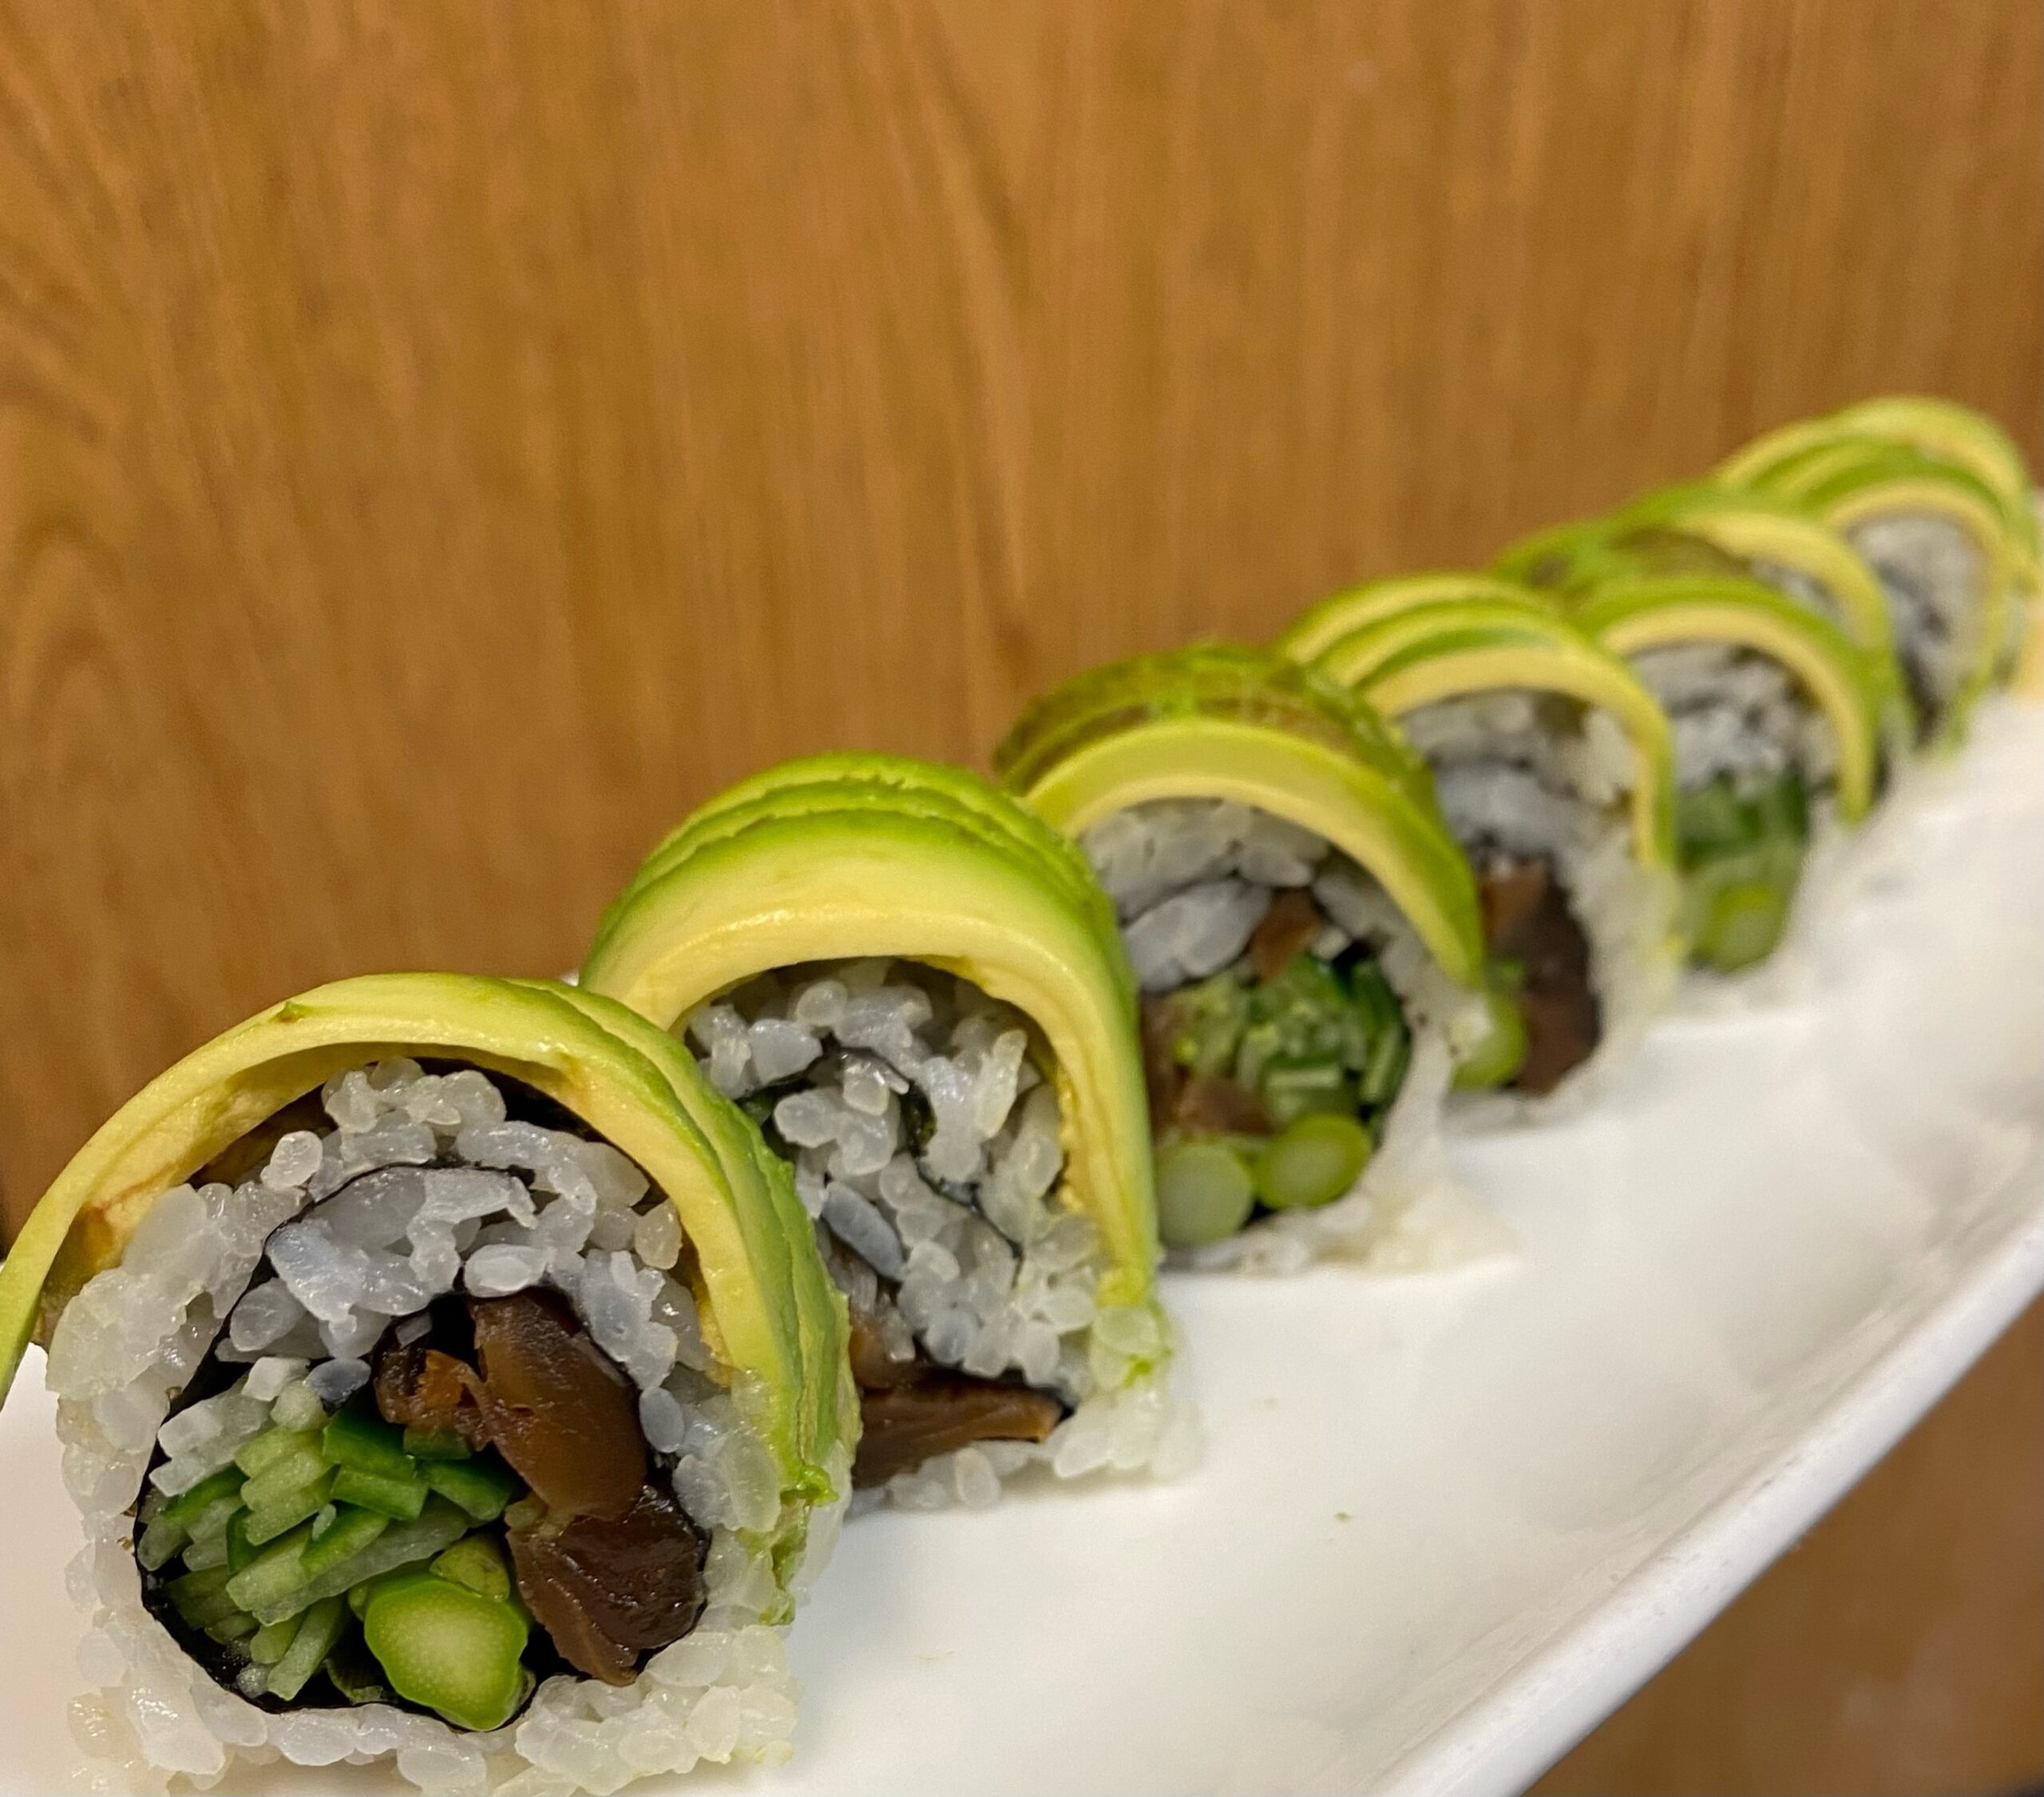 Sen Japanese Restaurant will serve vegetable rolls at the Taste of Sag Harbor, alongside other dishes. COURTESY SEN